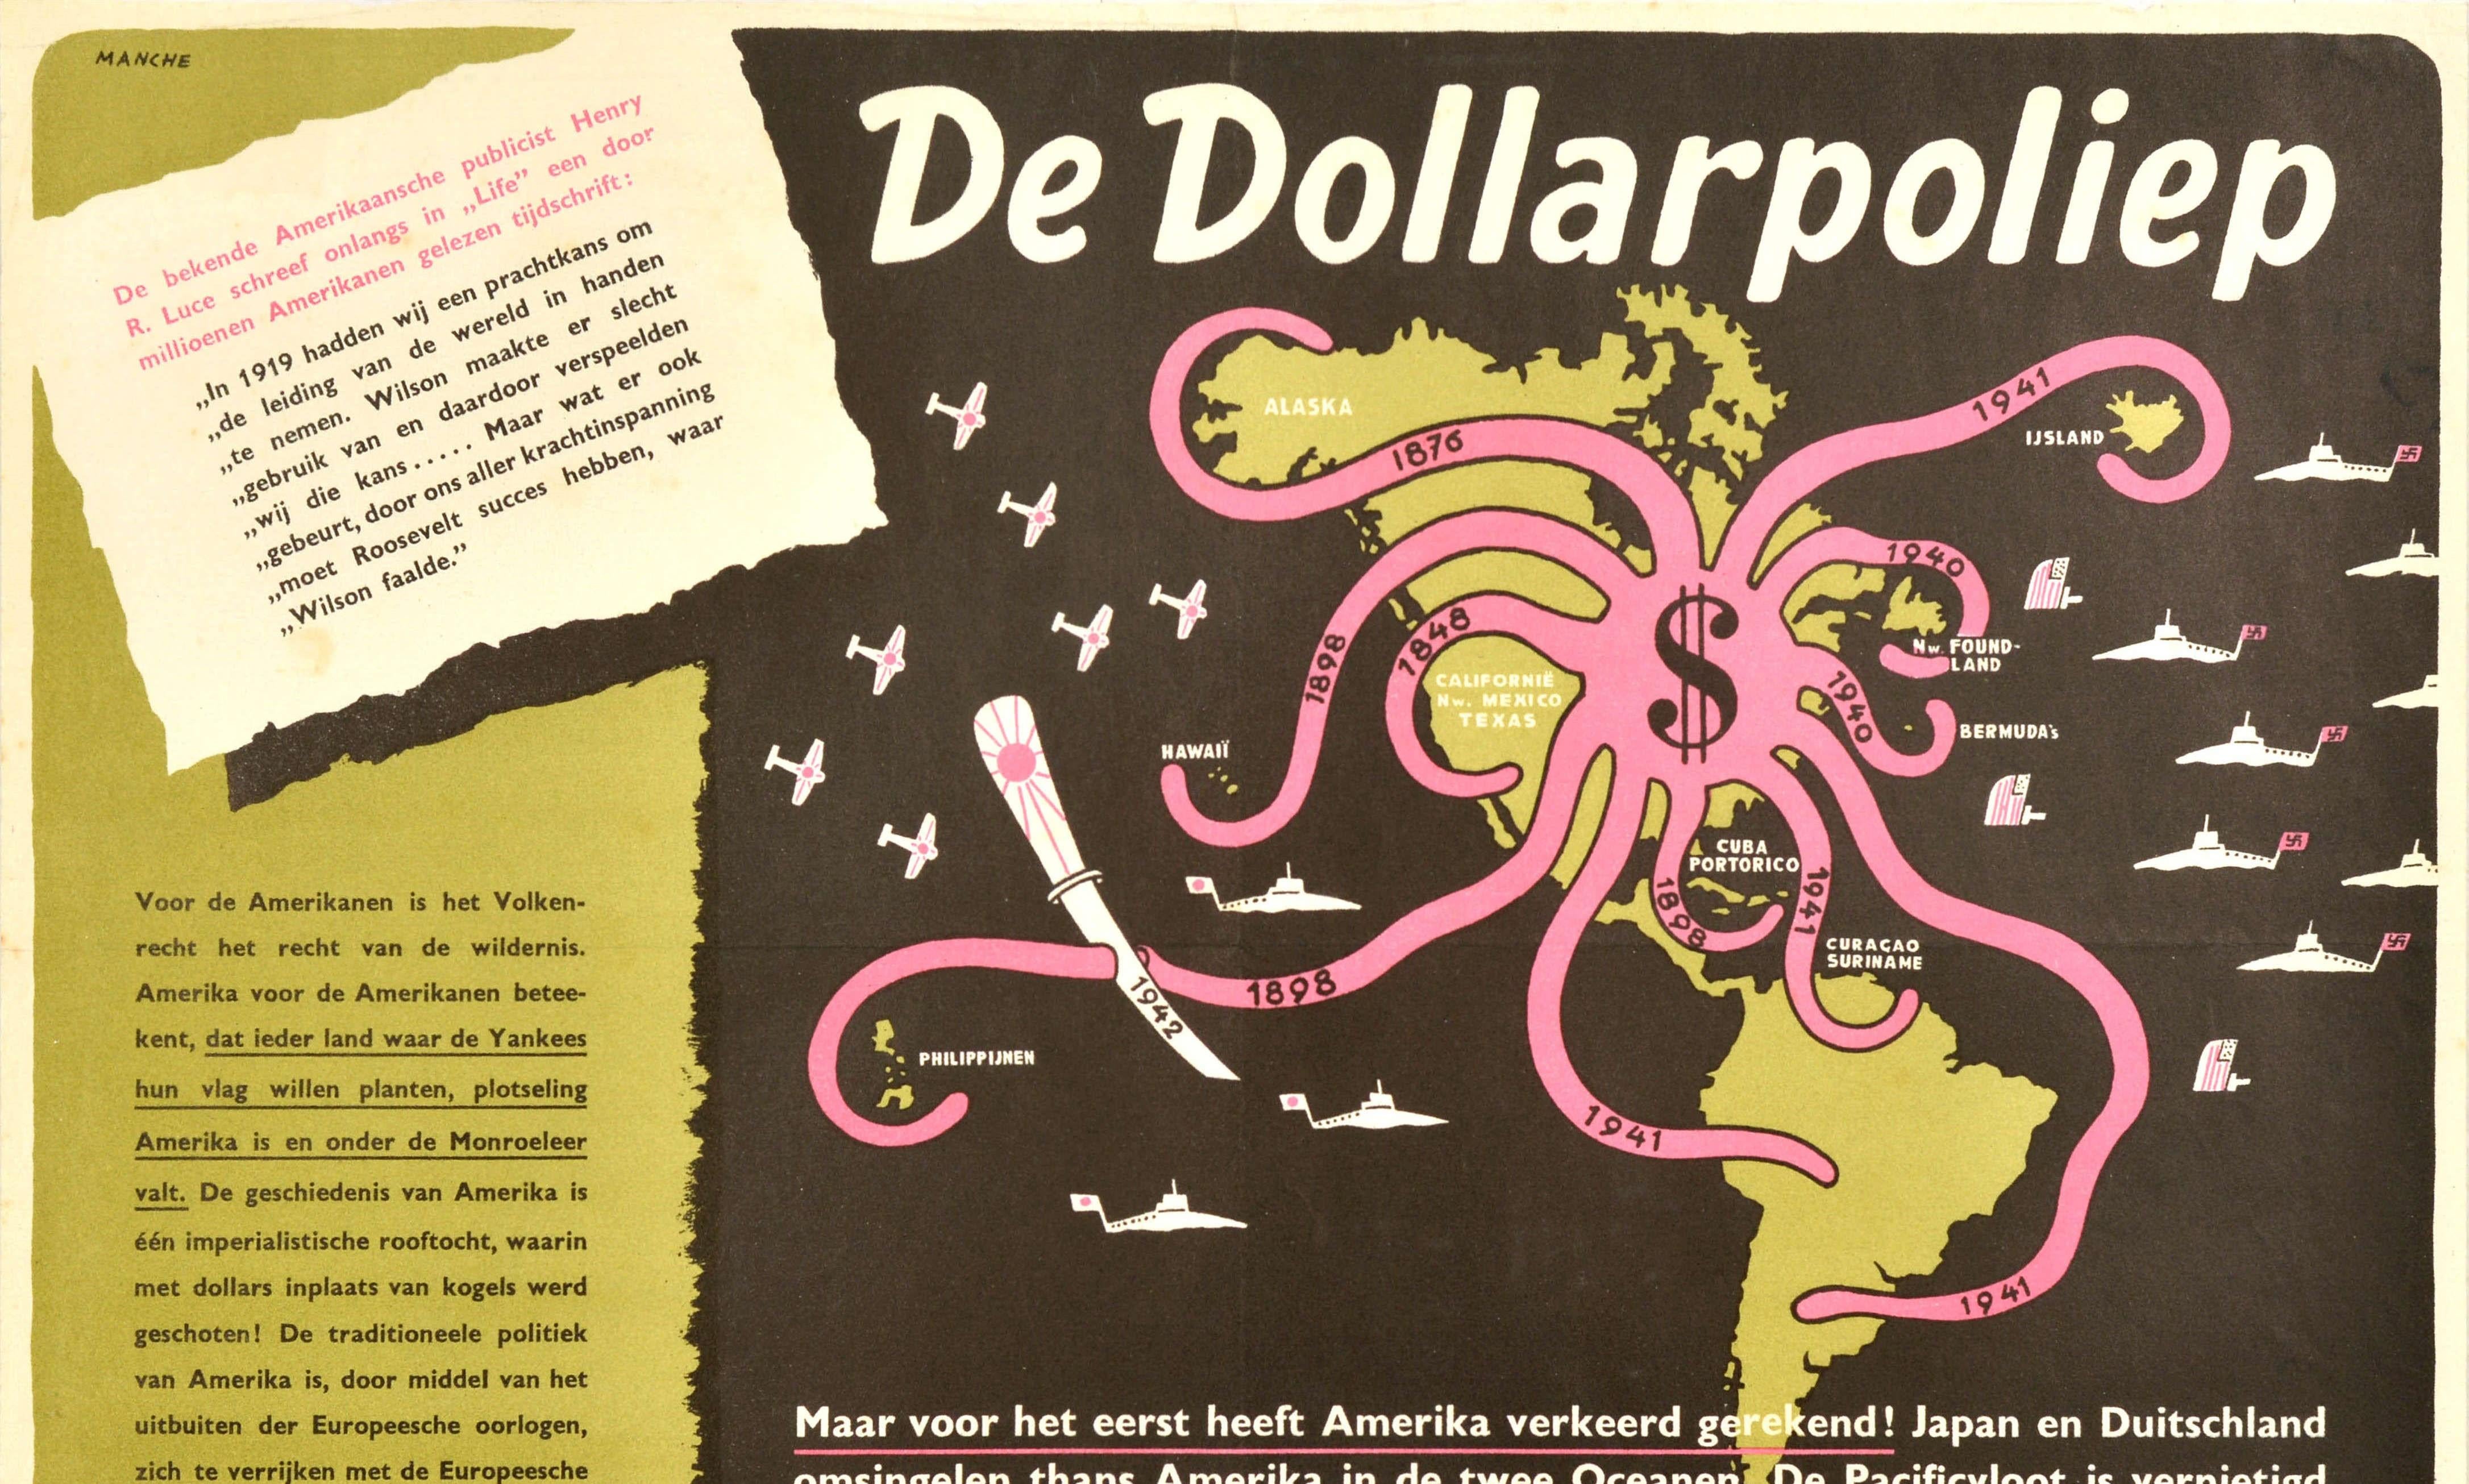 Original Vintage antiamerikanischen Imperialismus Zweiten Weltkrieg politische Propaganda-Plakat - De Dollarpoliep / The Dollar Polyp oder The Dollar Octopus - mit einem Bild von einem US-Dollar-Zeichen mit Krake wie Tentakeln, die in verschiedenen